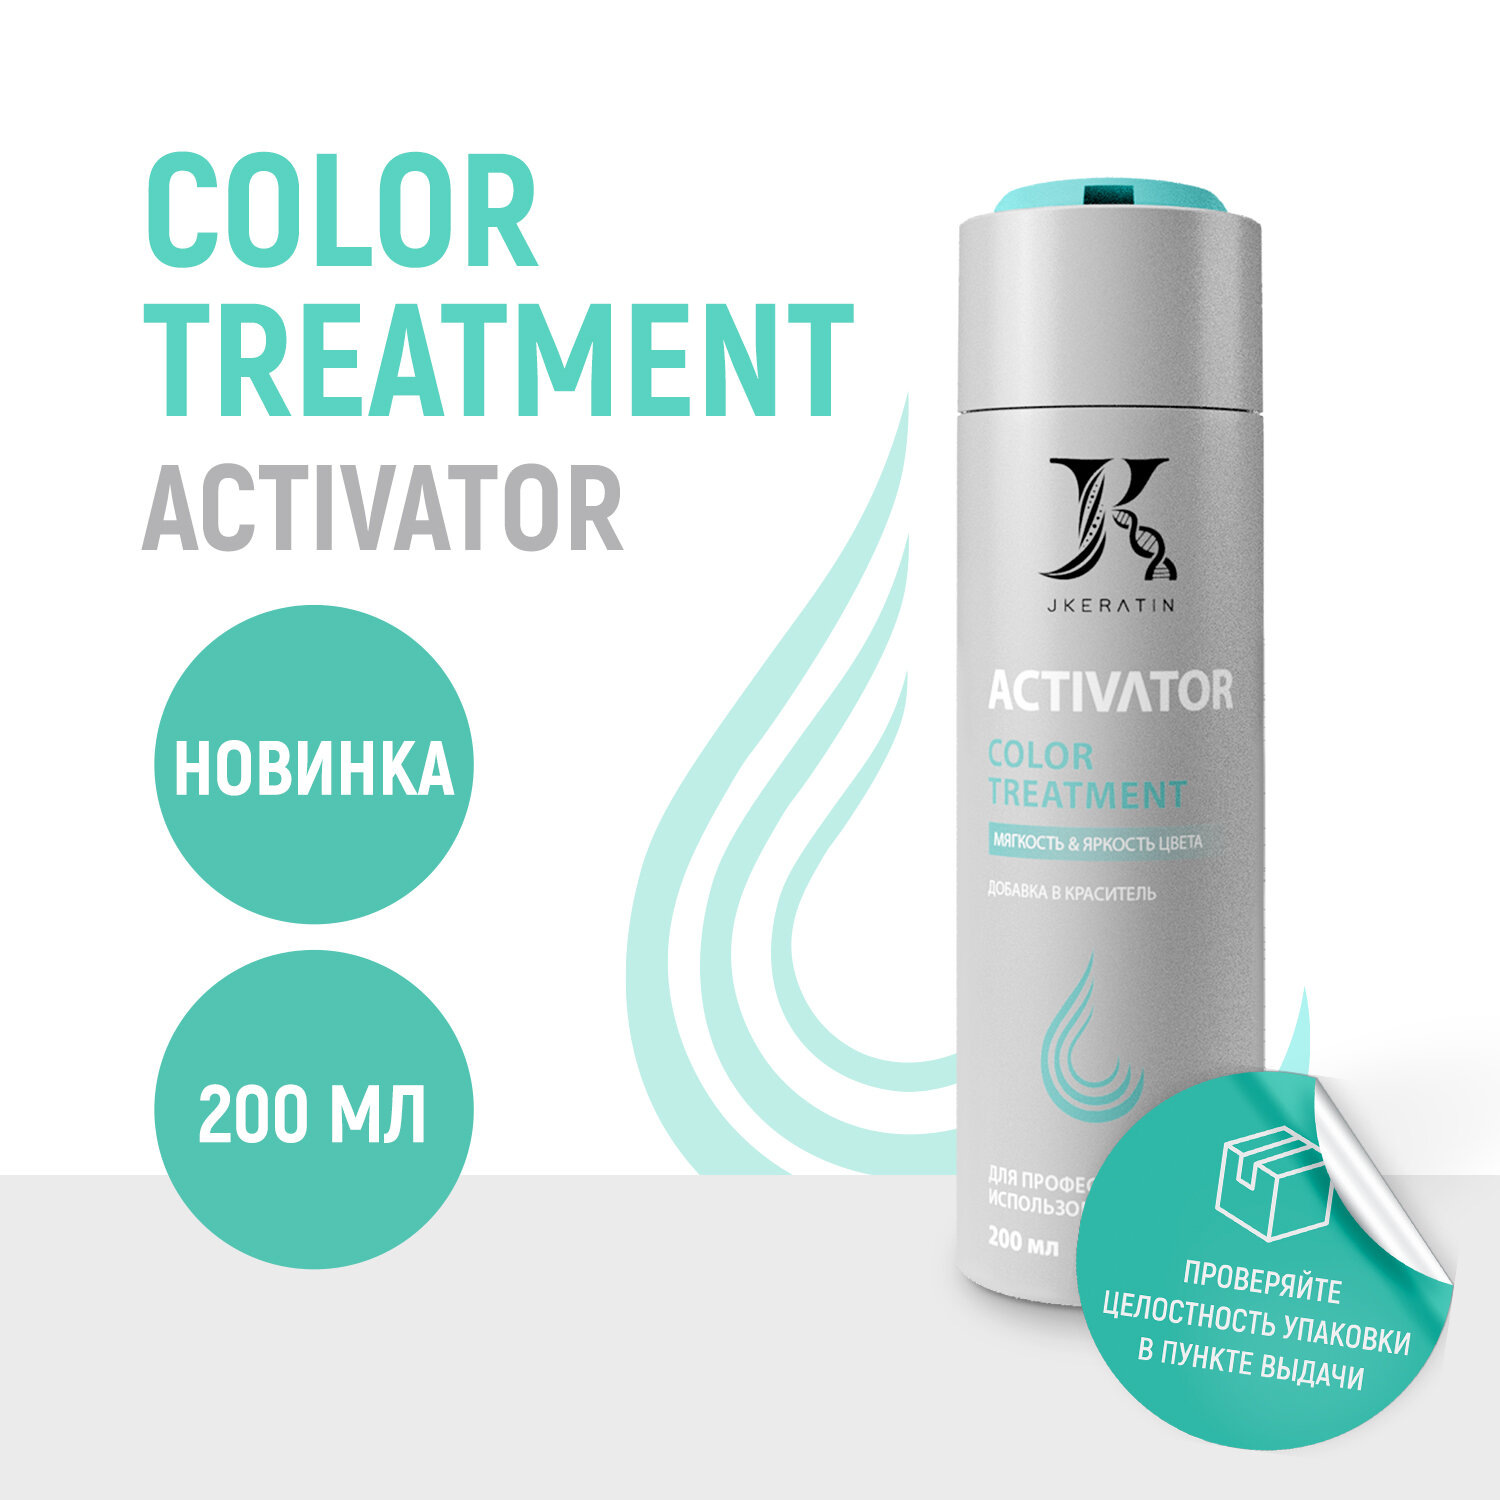 Activator Color Treatment — профессиональная универсальная добавка в осветляющие продукты и красители.